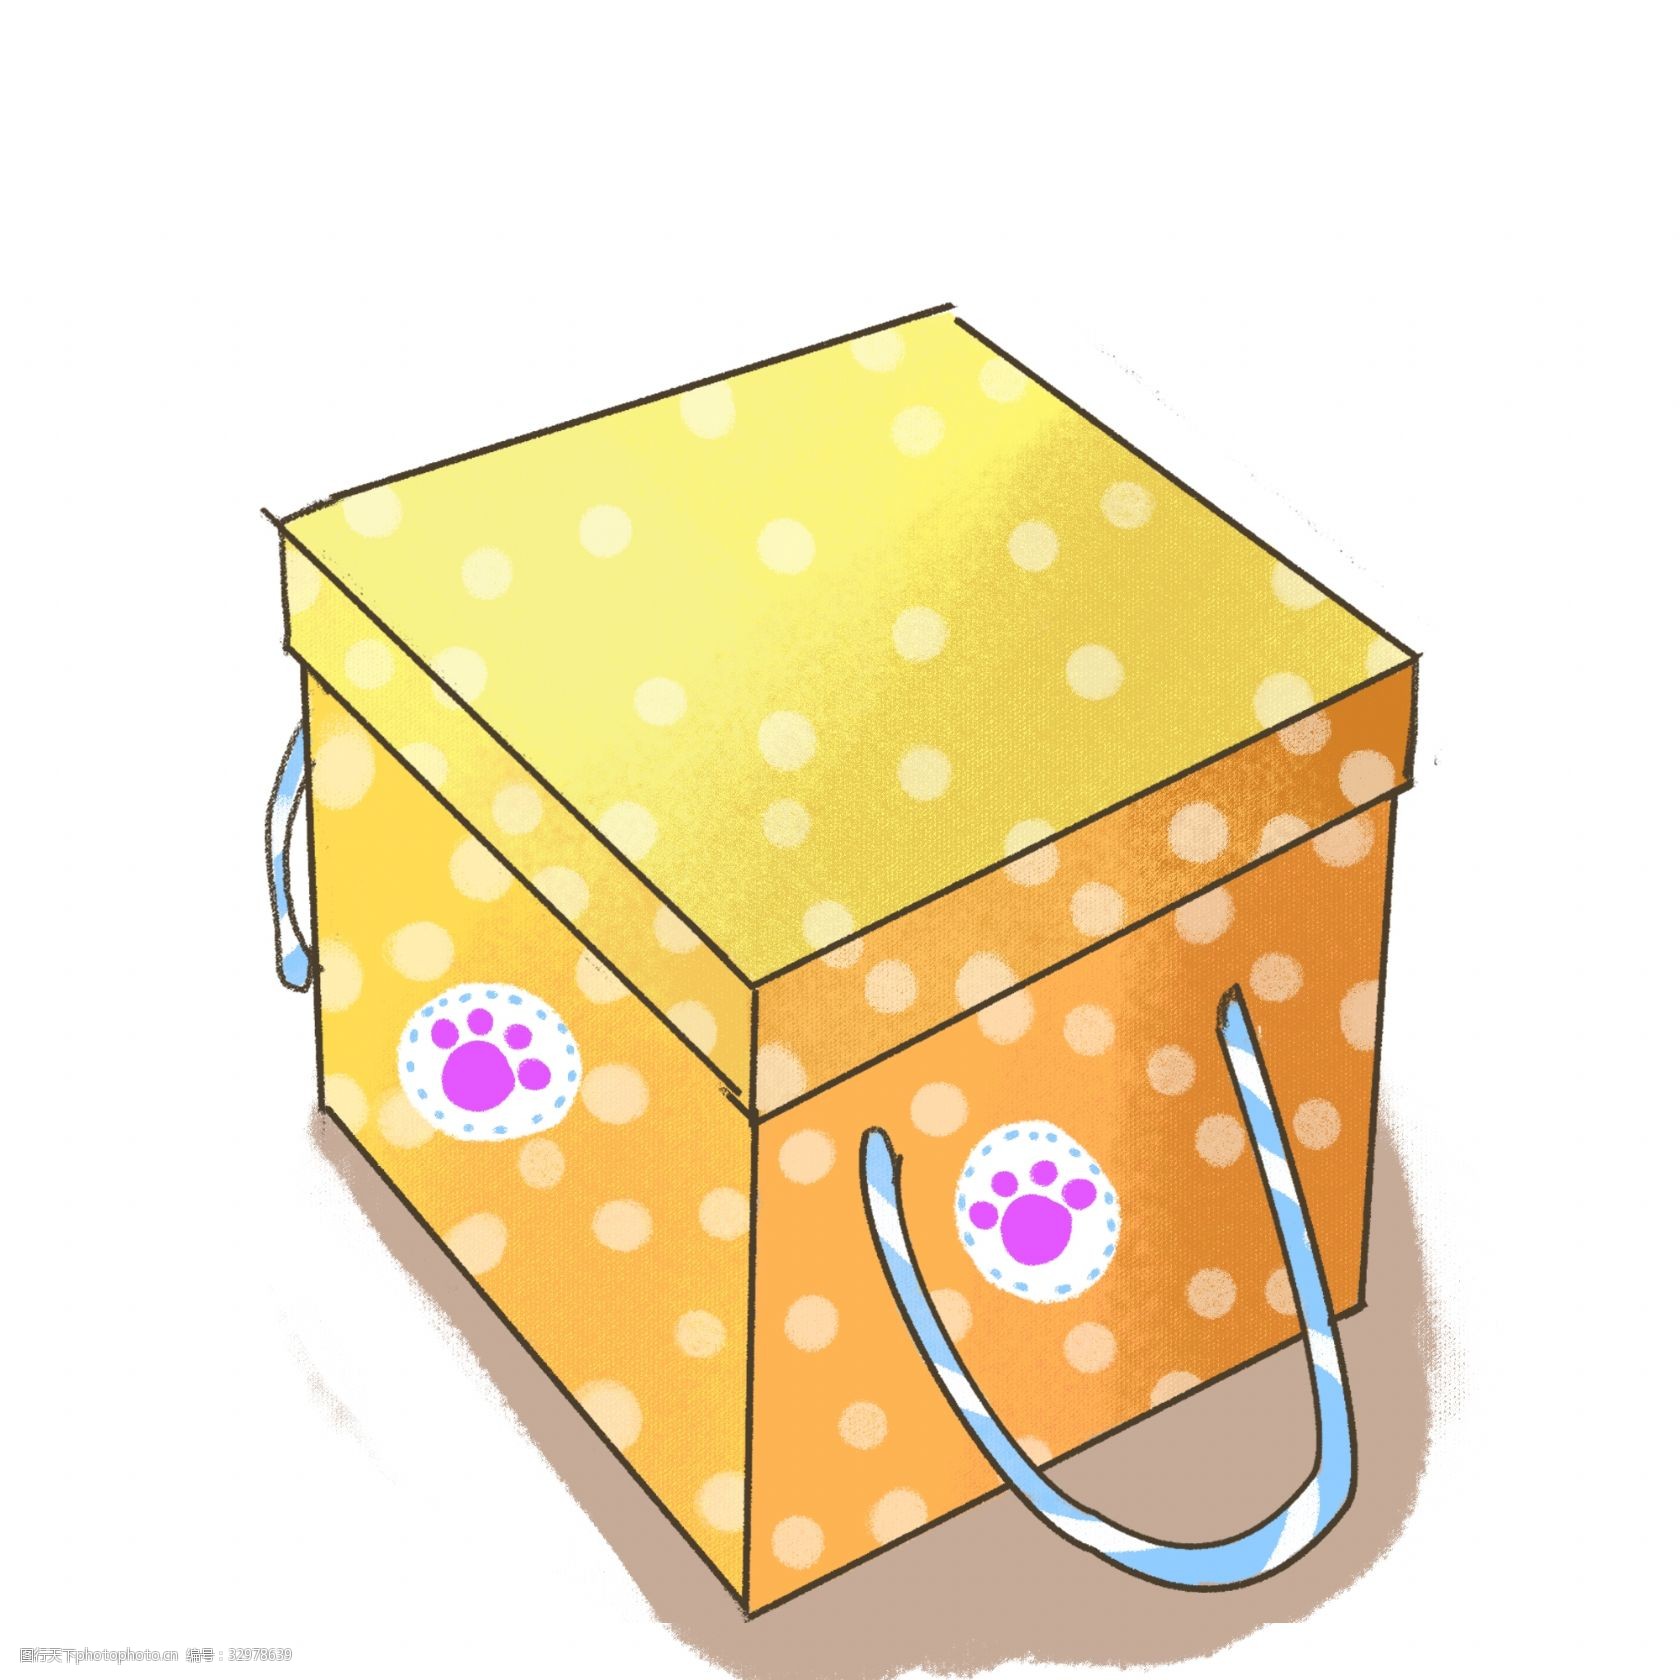 关键词:卡通黄色礼盒 礼盒 卡通 手绘 装饰 盒子 可爱